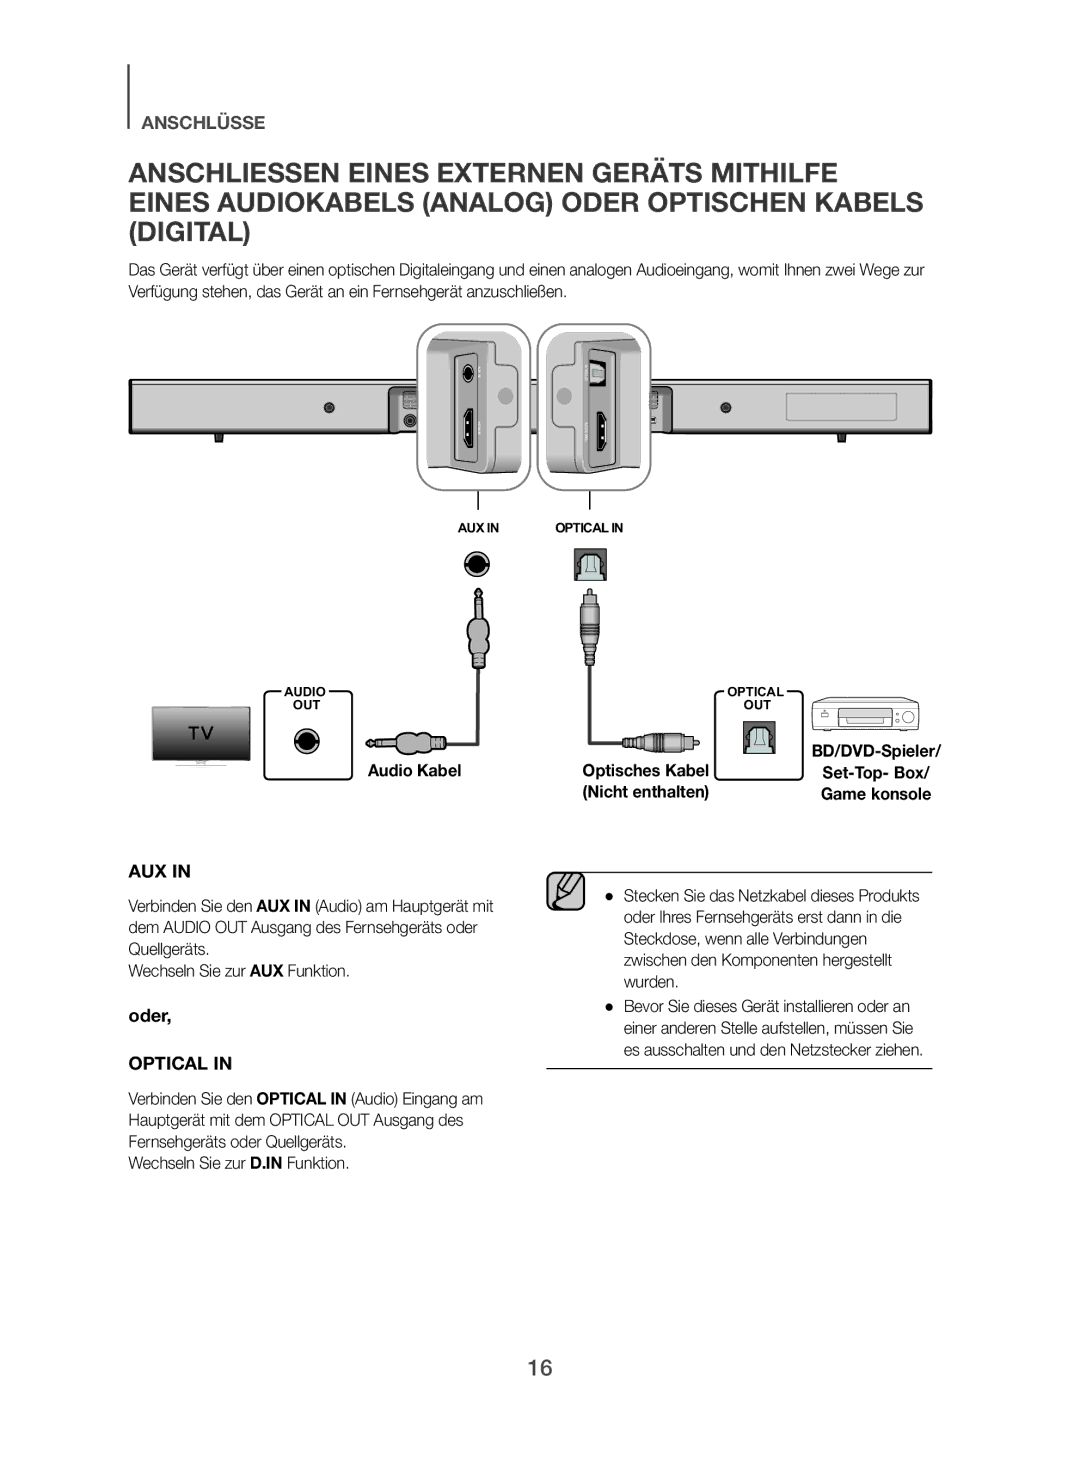 Samsung HW-H450/EN, HW-H450/TK, HW-H450/ZF Audio Kabel, Wechseln Sie zur D.IN Funktion, Optisches Kabel, Nicht enthalten 